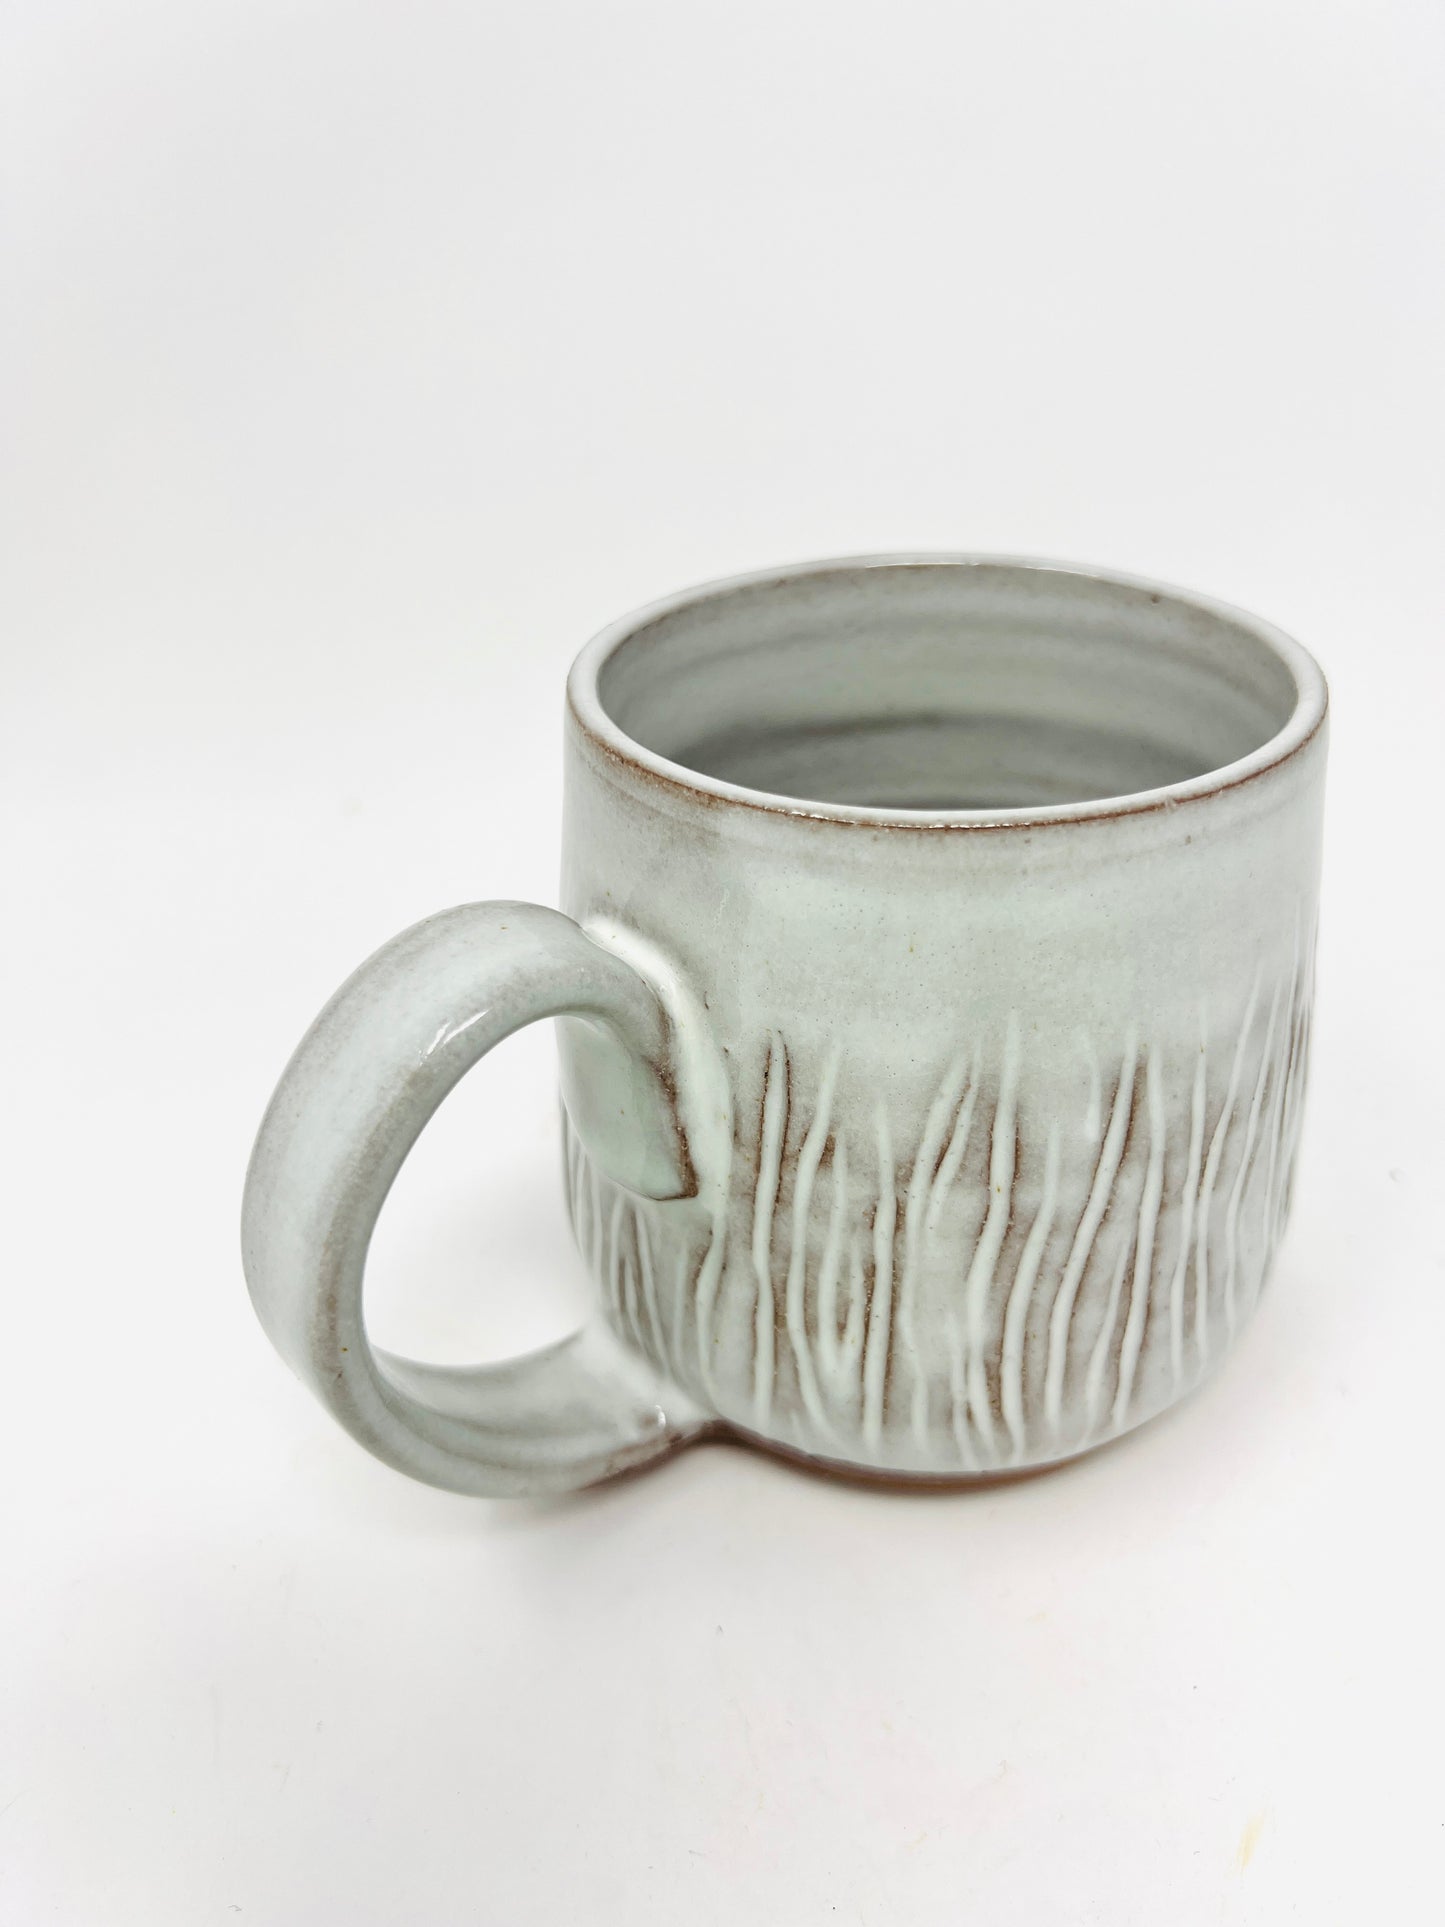 Cream & Wood Grain Mug